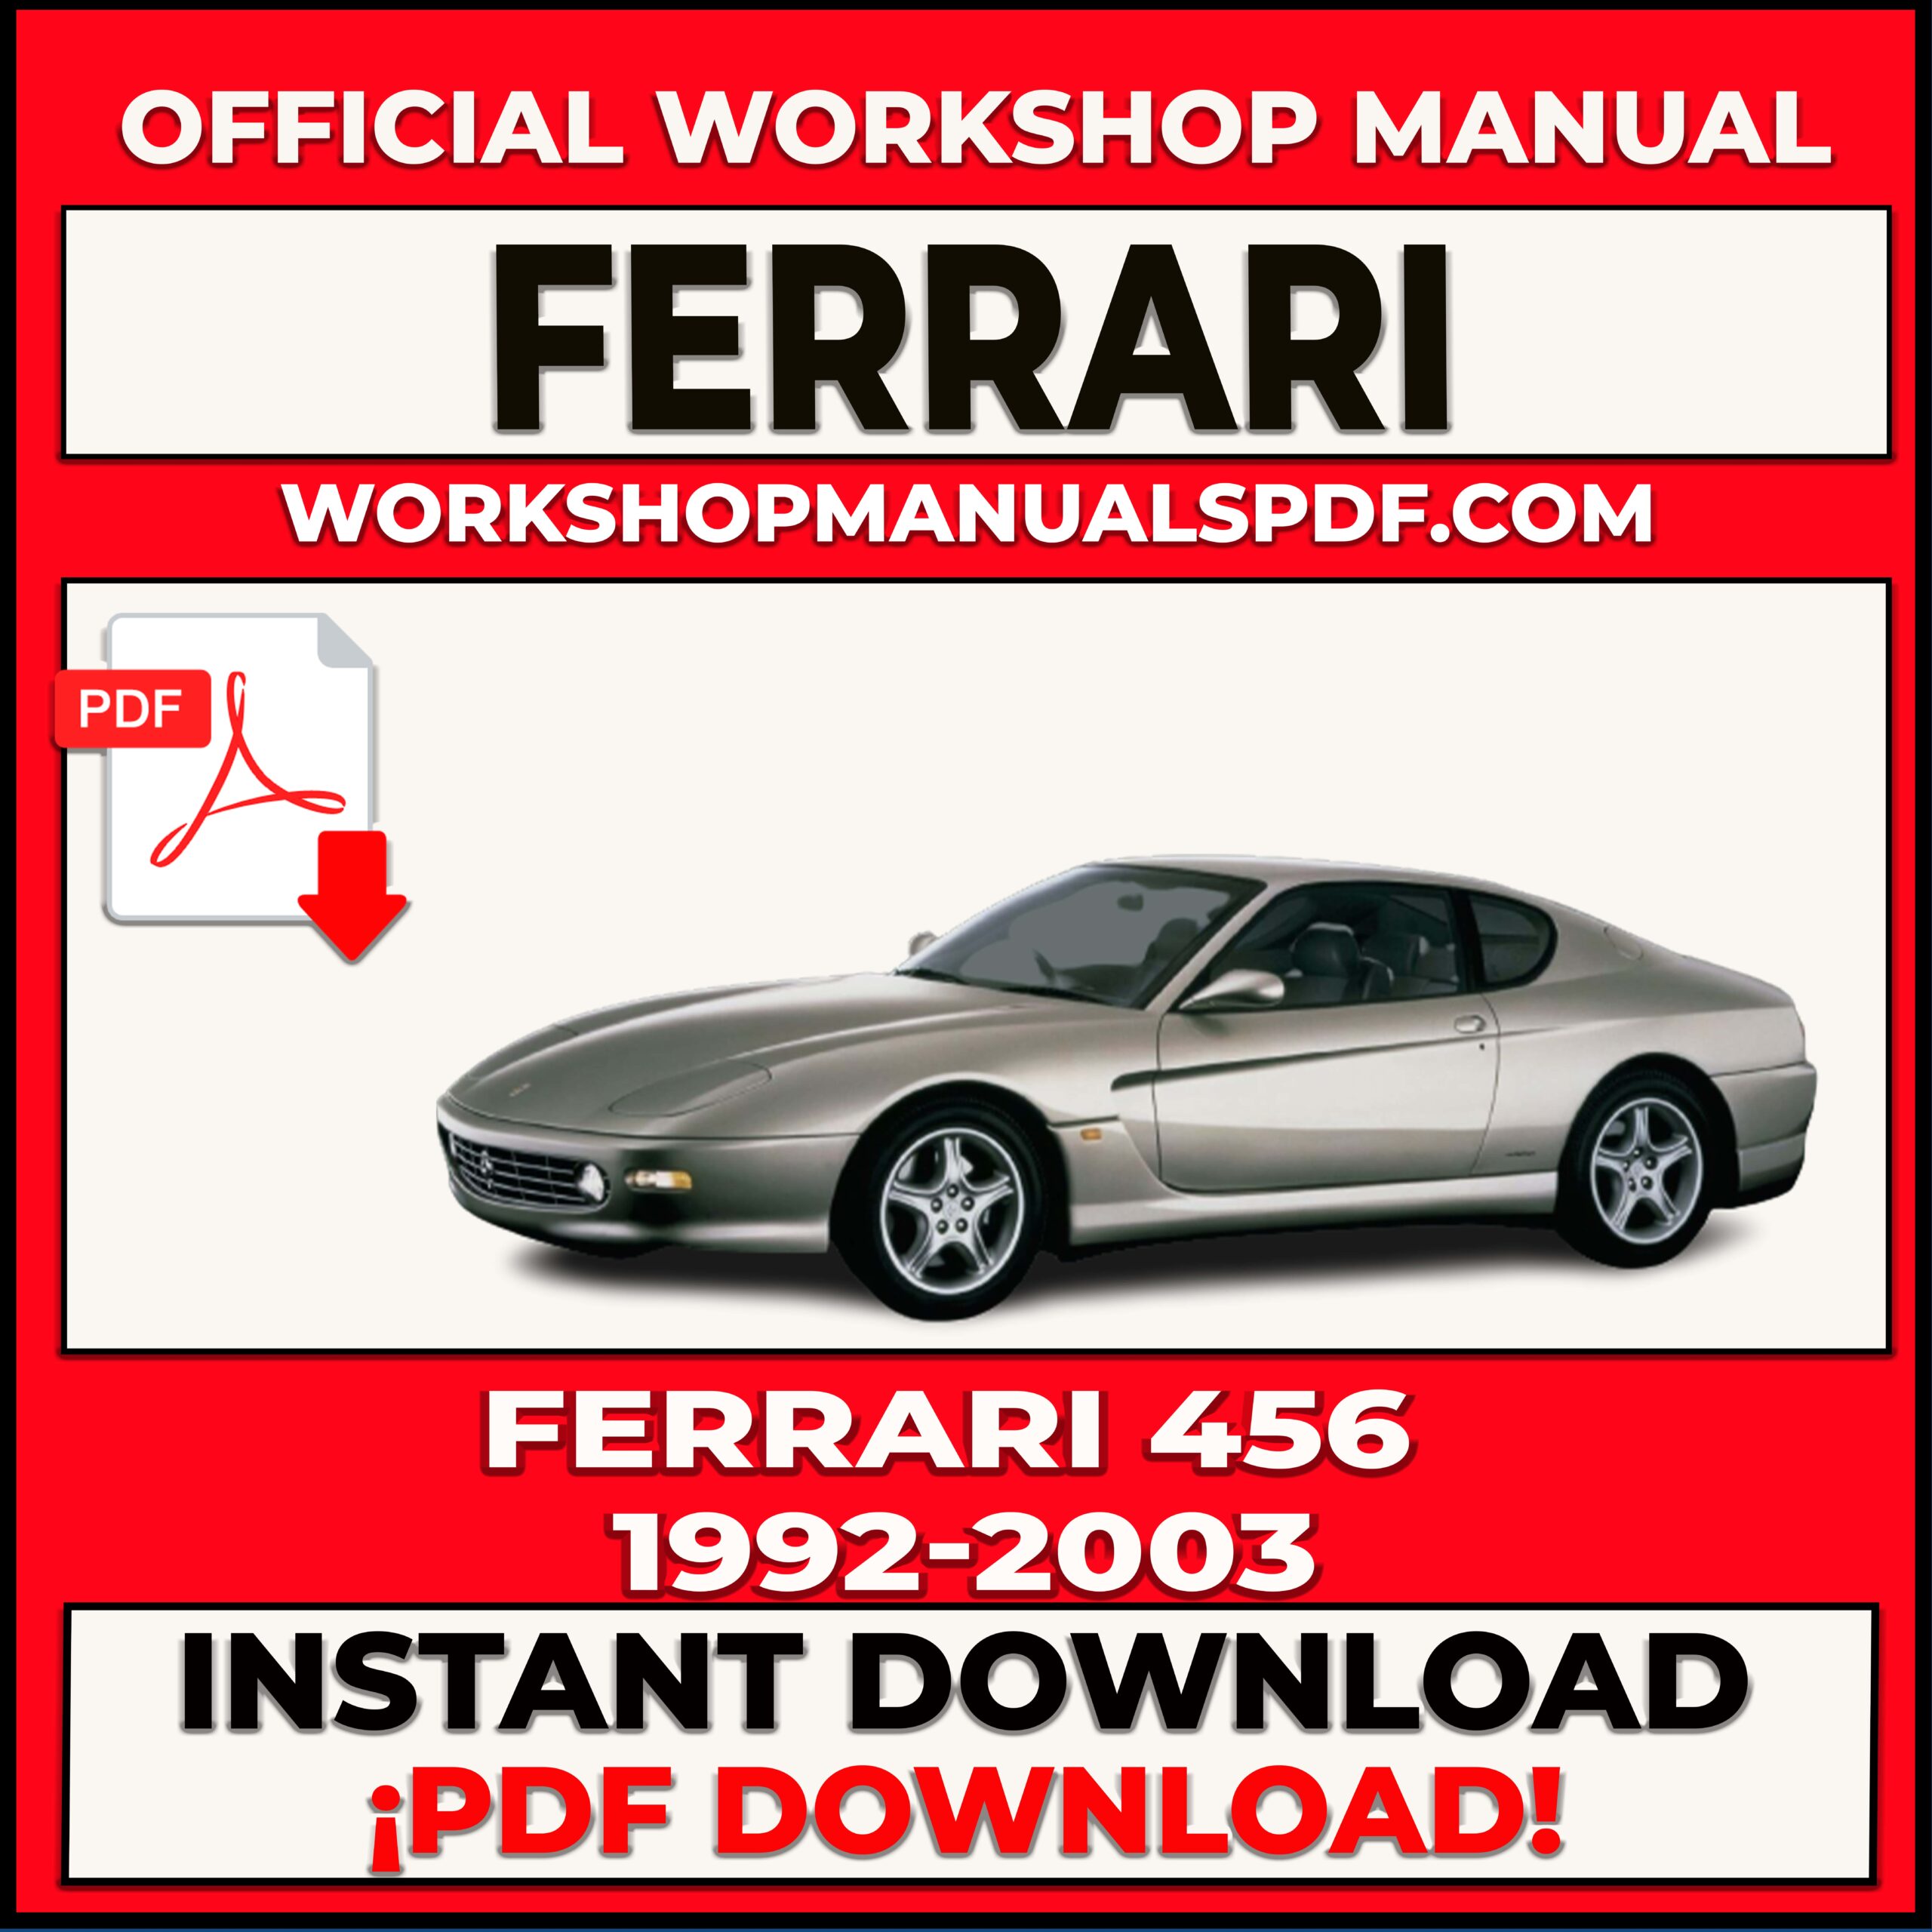 Ferrari 456 1992-2003 Workshop Repair Manual